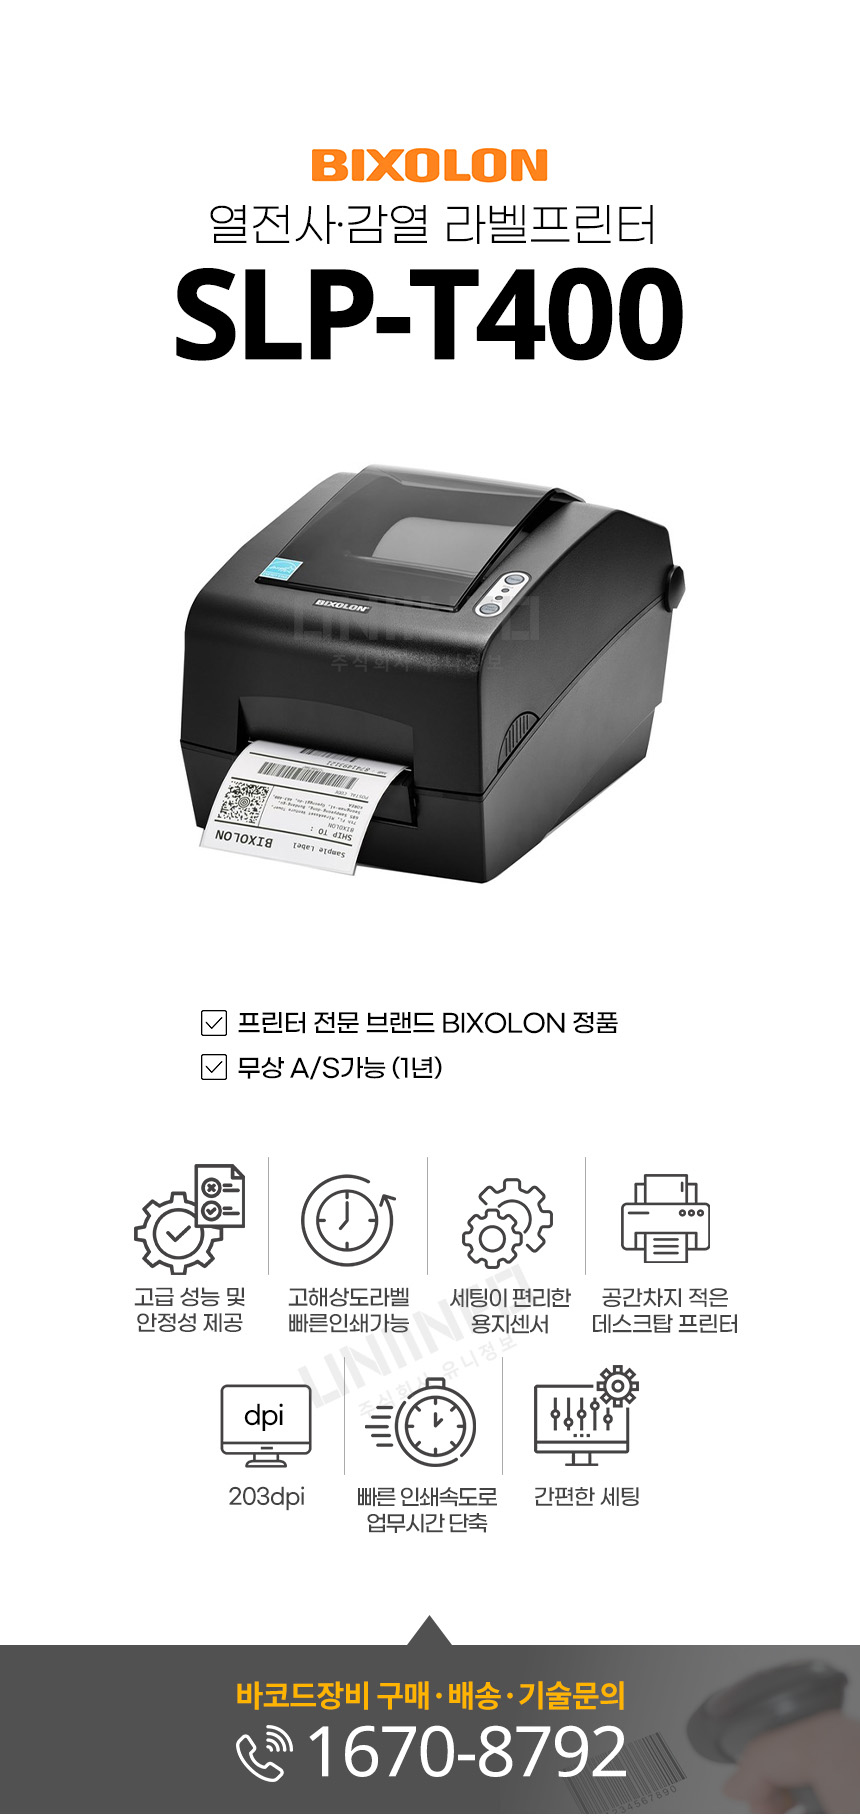 slp-t400 열전사 감열 라벨 프린터 고해상도 라벨 빠른 인쇄가능 203dpi 공간차지 적은 데스크탑 프린터